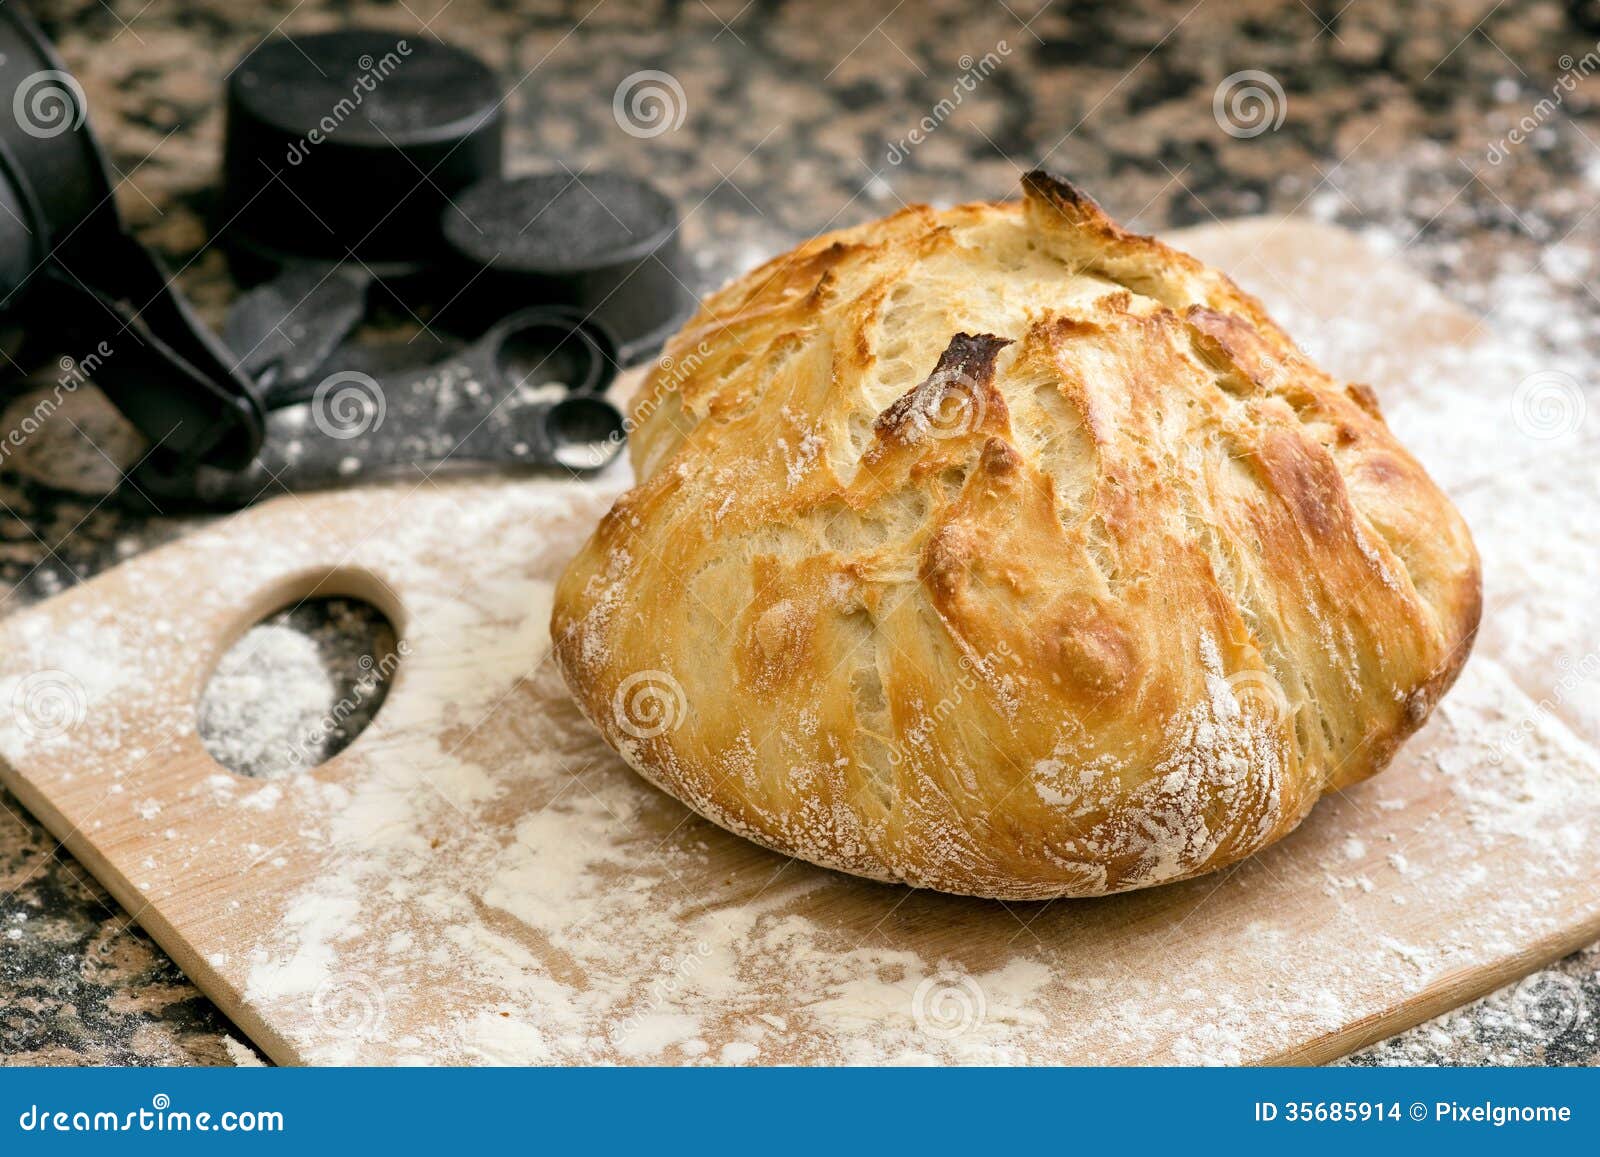 fresh baked artisan bread